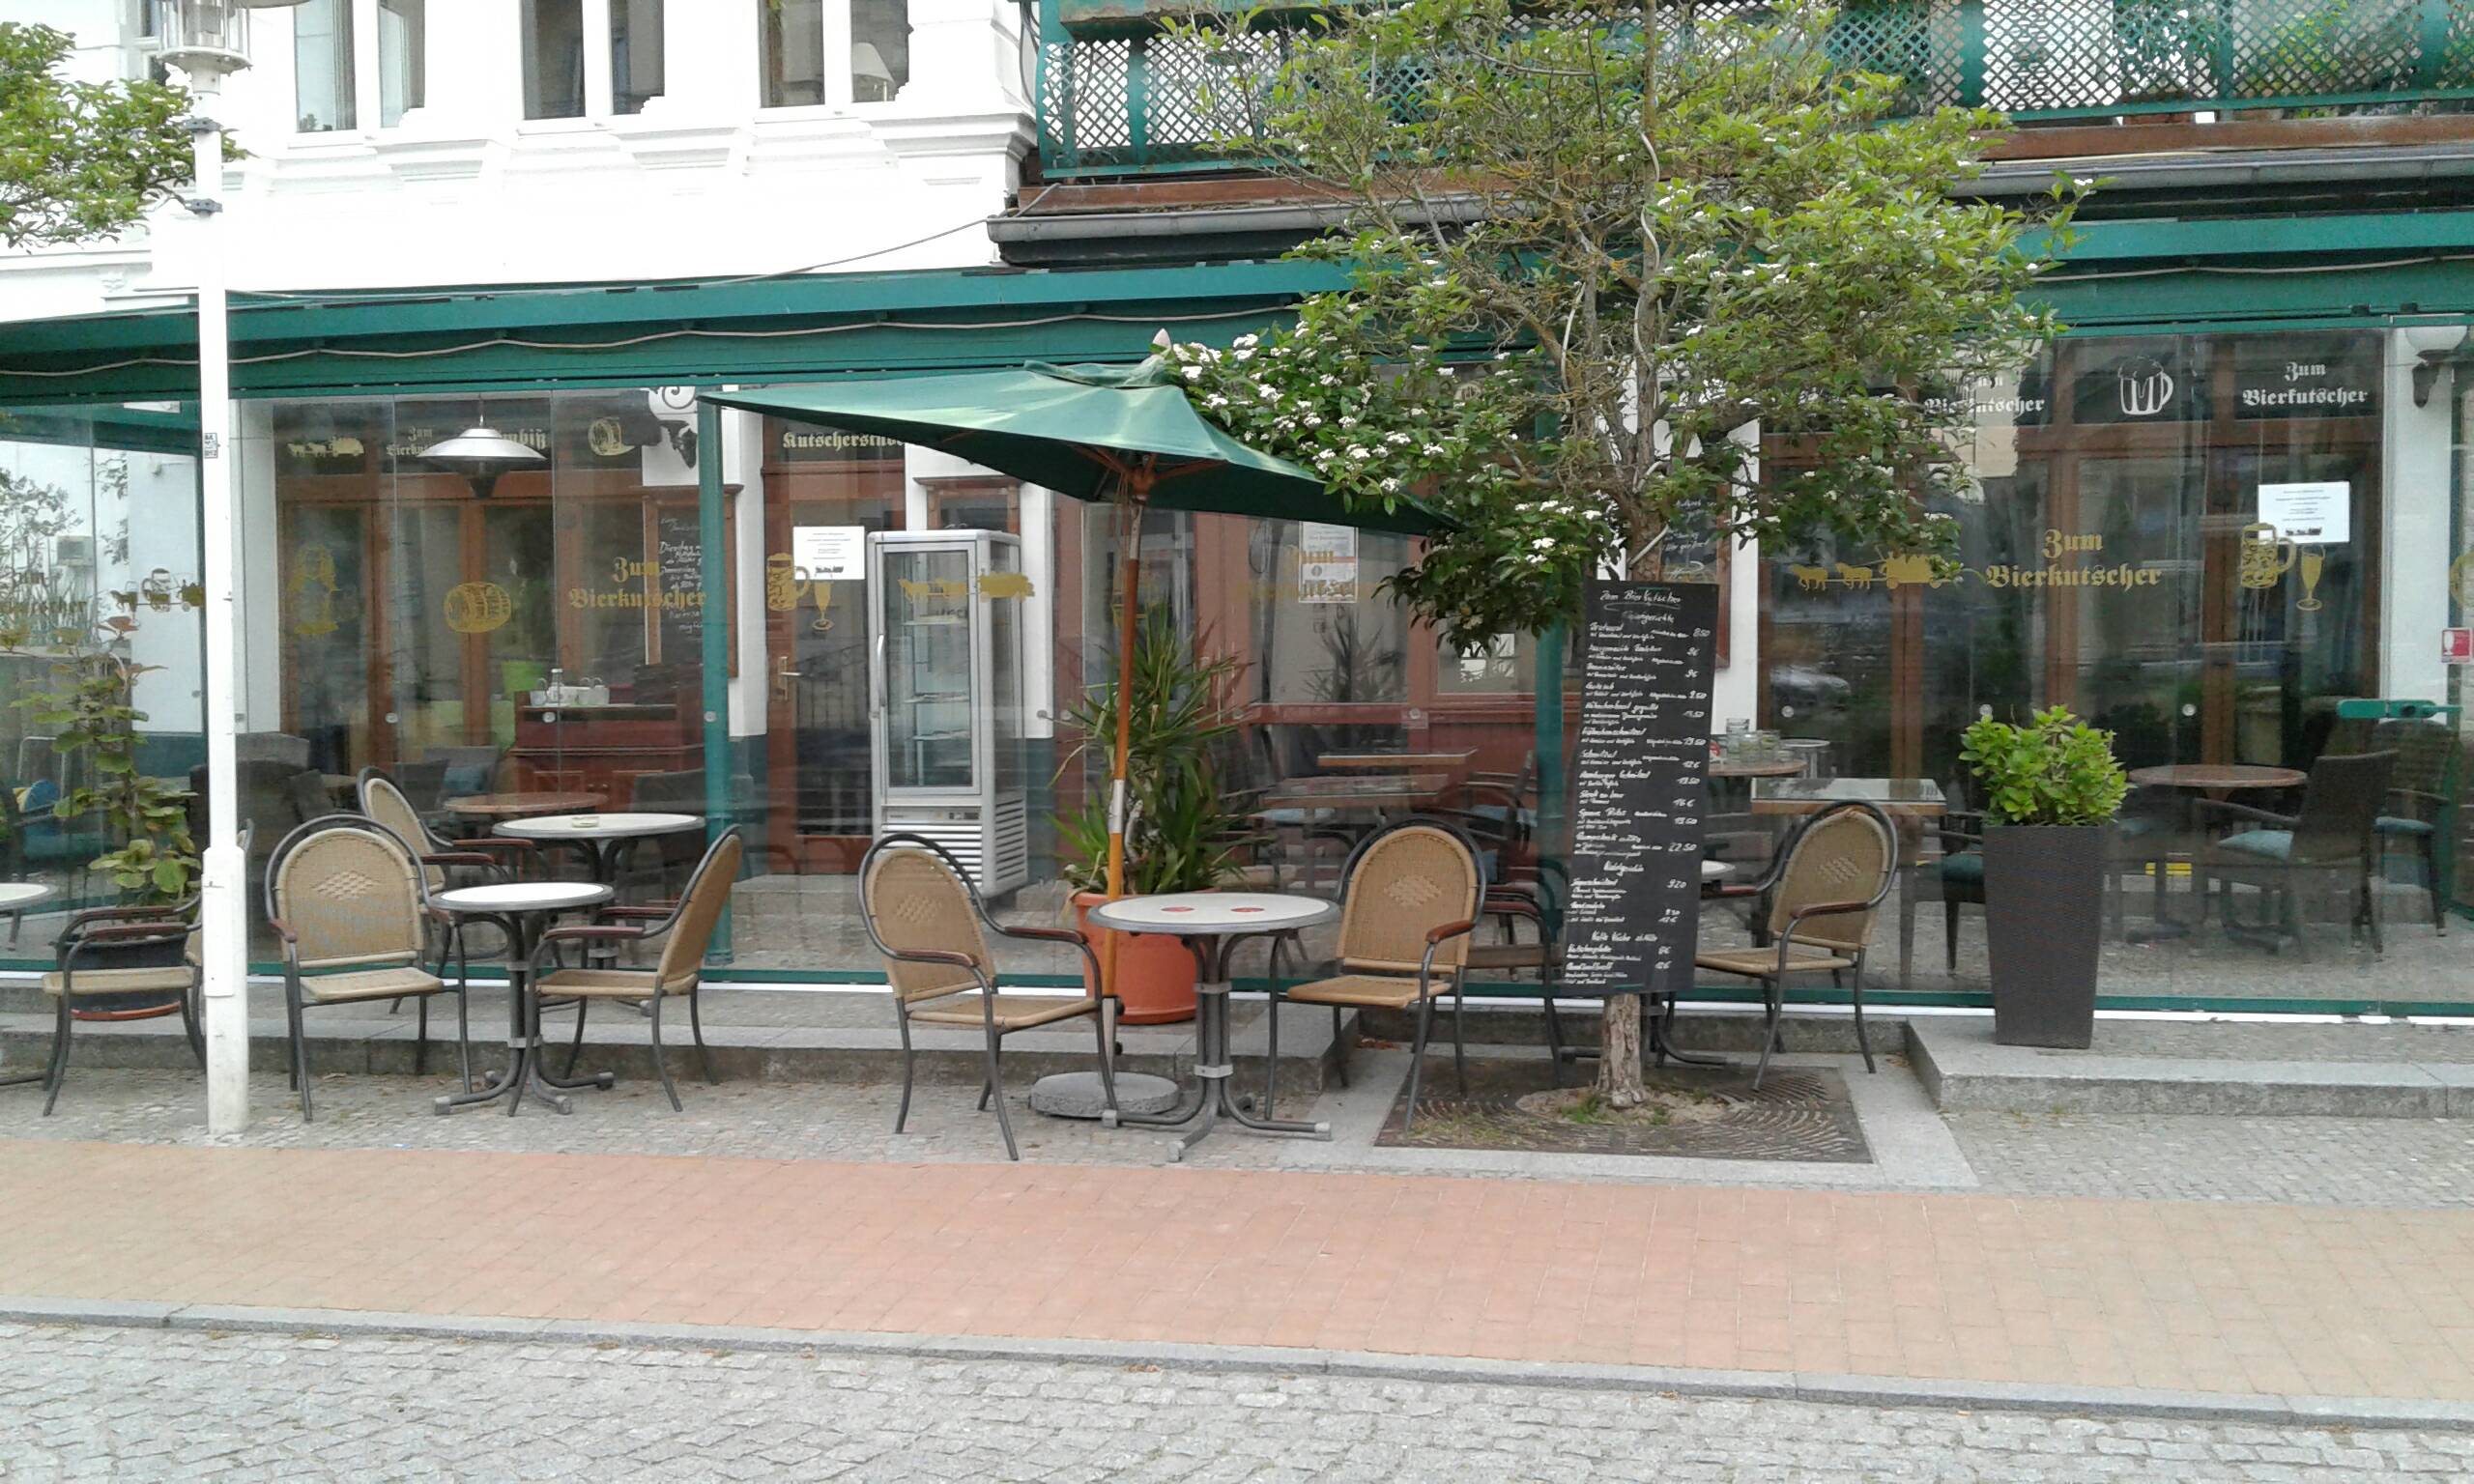 Bild 2 Restaurant "Zum Bierkutscher" in Bansin